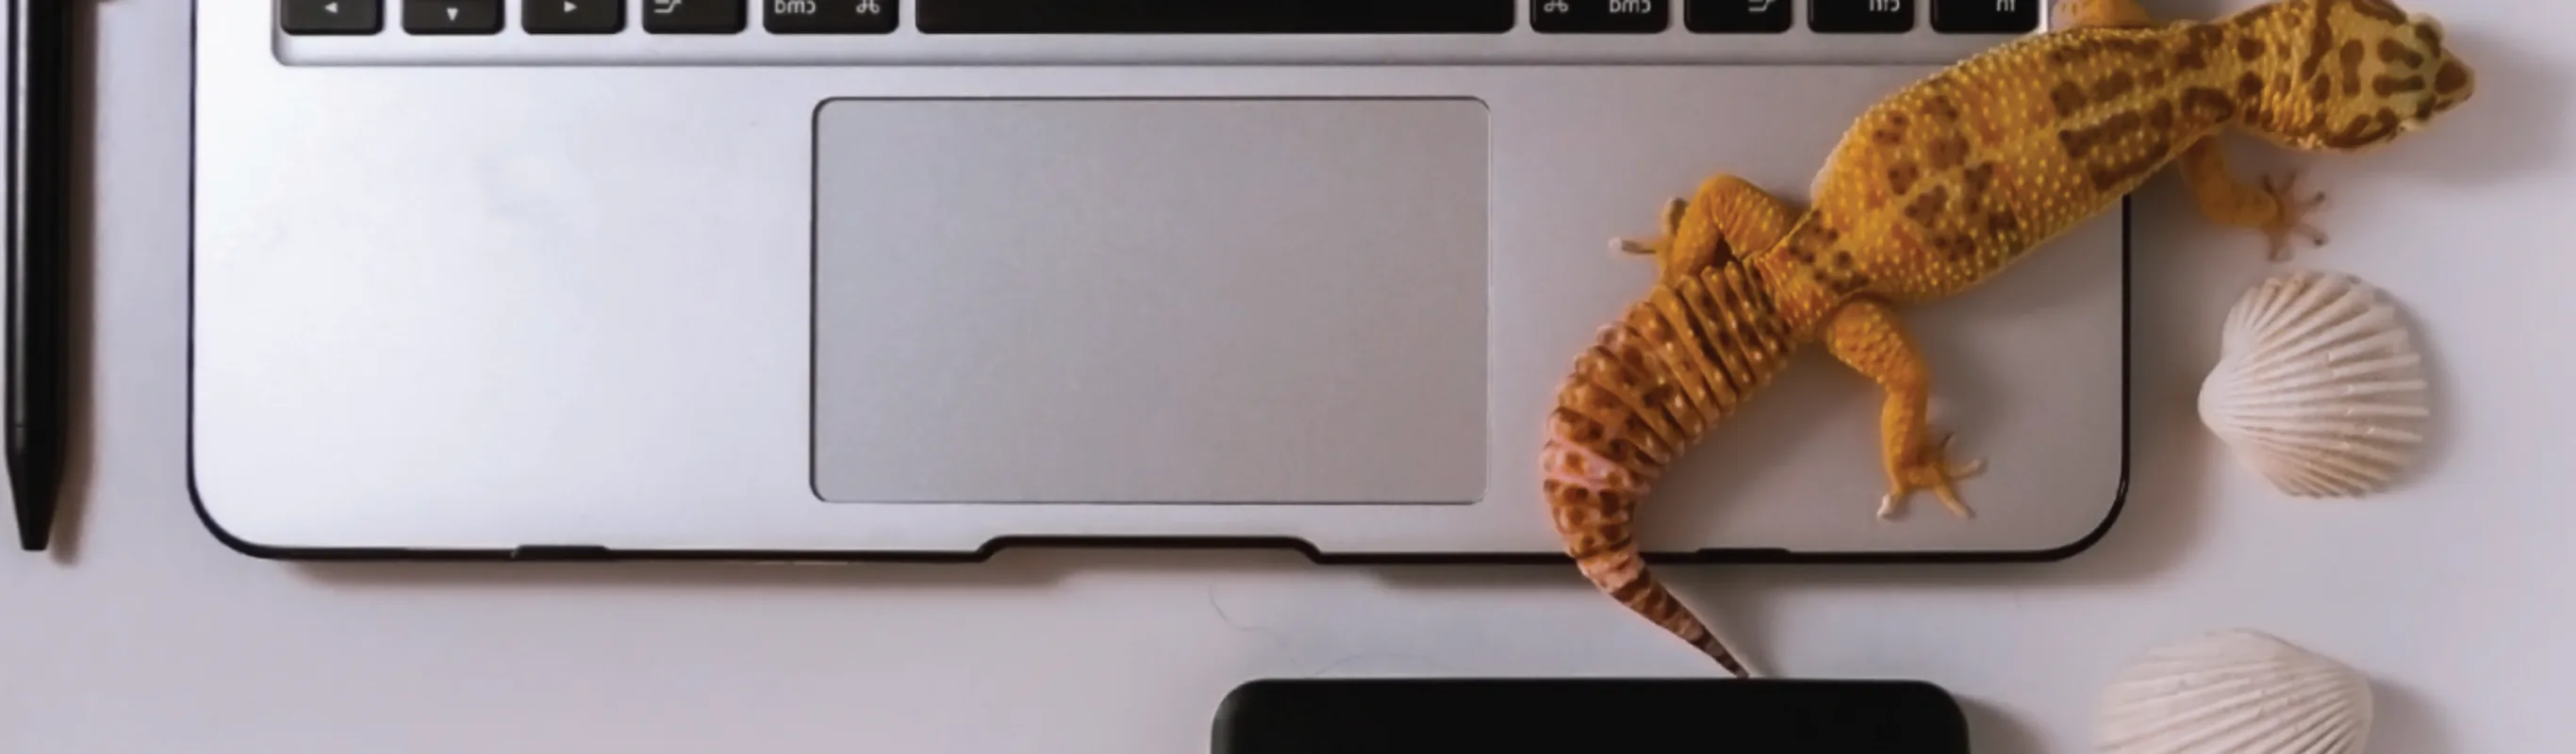 Lizard on laptop on table